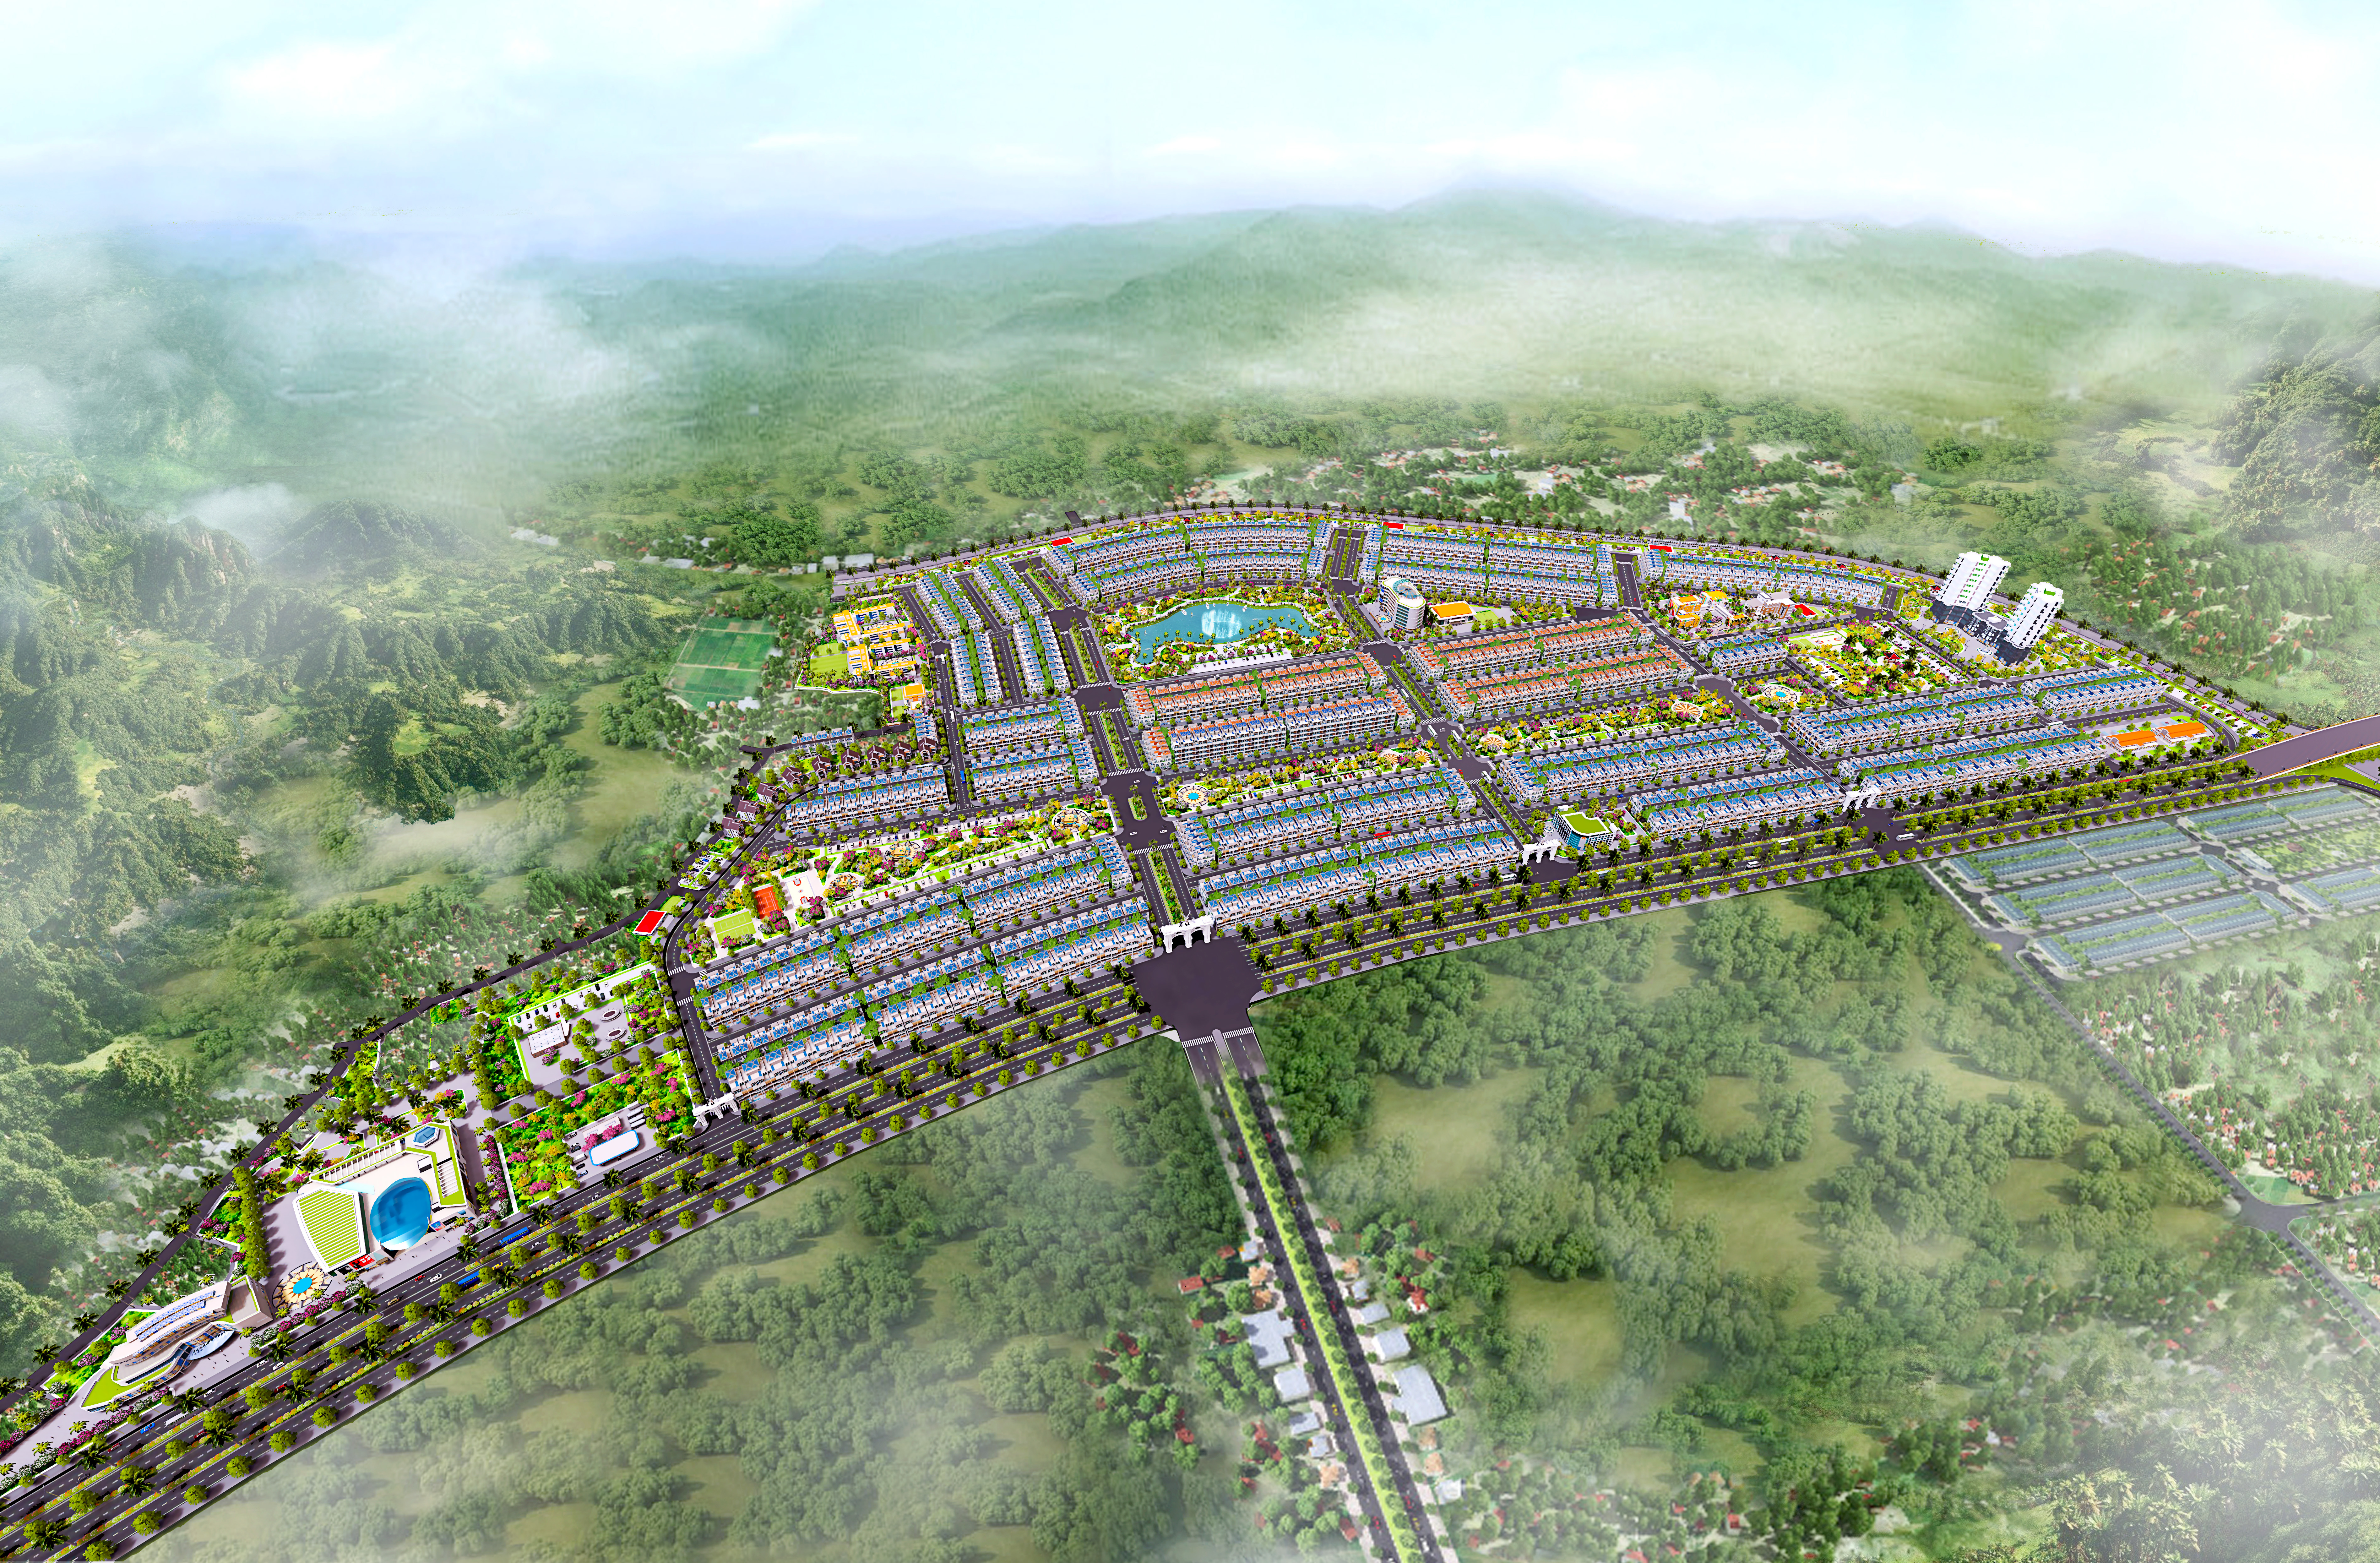 Dự án quy hoạch chi tiết khu dân cư mới Yên Sơn 3, huyện Lục Nam, tỷ lệ 1/500